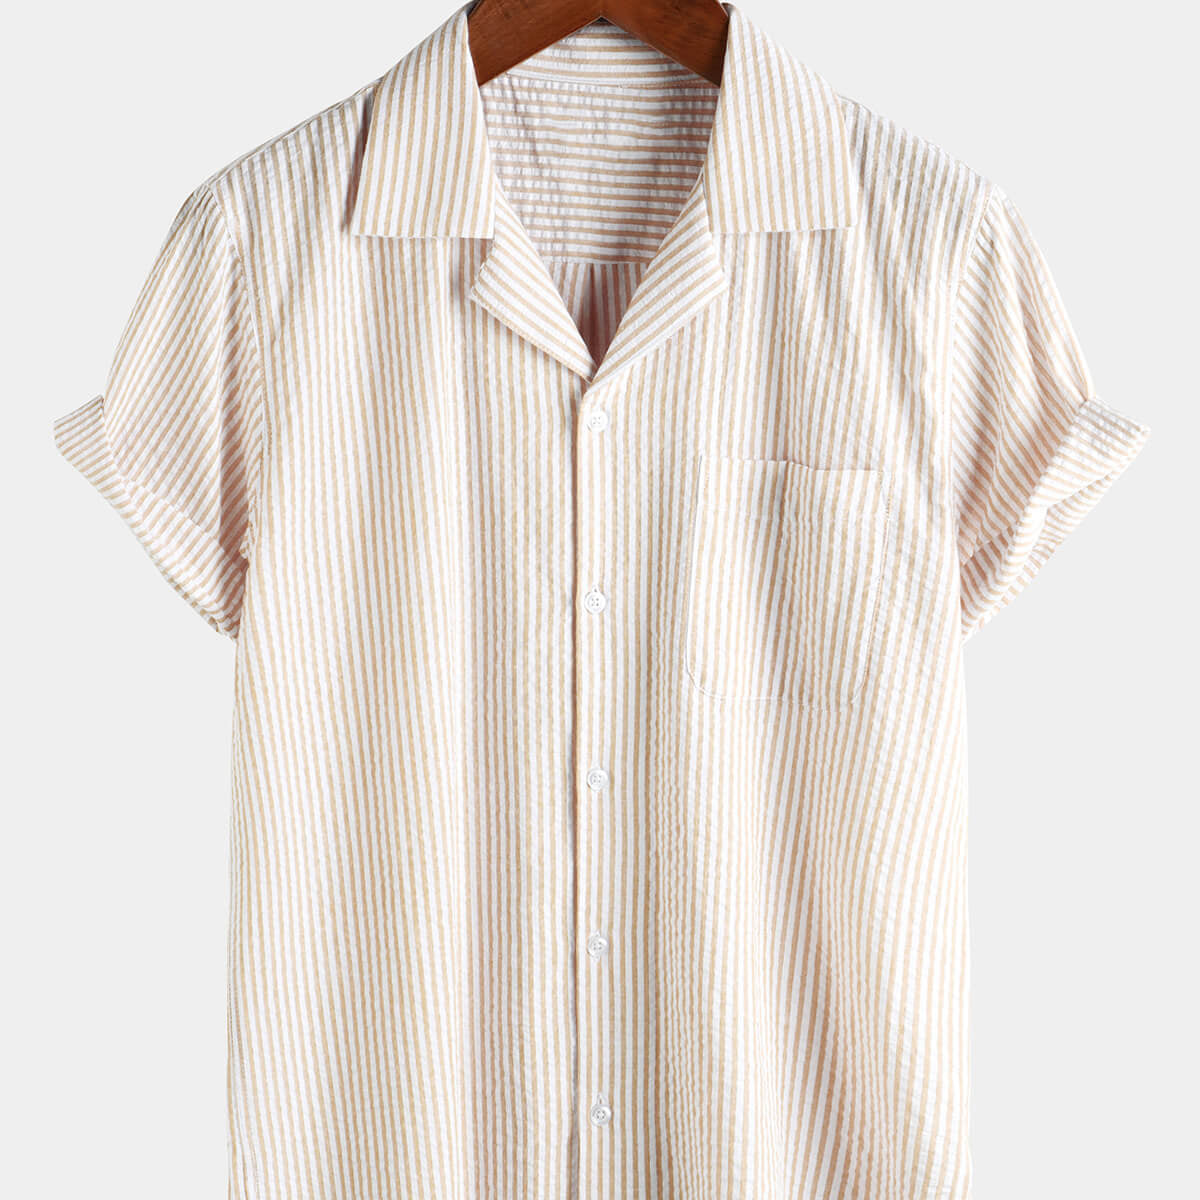 Chemise boutonnée décontractée à manches courtes pour homme 100 % coton avec poche d'été